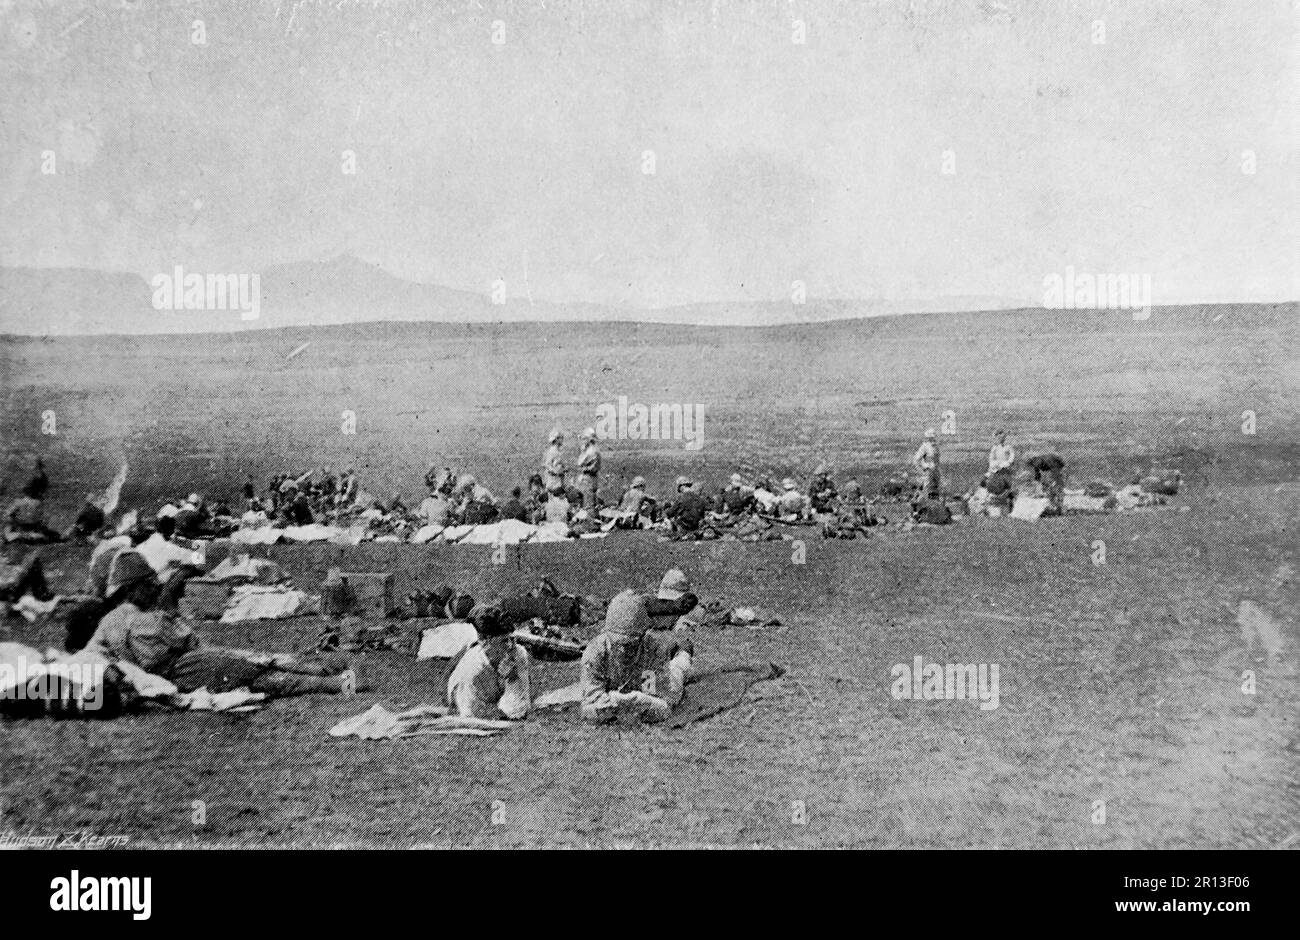 Der Burenkrieg, auch bekannt als der zweite Burenkrieg, der südafrikanische Krieg und der Anglo-Boer-Krieg. Dieses Bild zeigt das Schlachtfeld von Dundee: Bivouac der 2. Royal Dublin Fusiliers. Originalfoto von ‚Navy and Army‘, c1899 Stockfoto